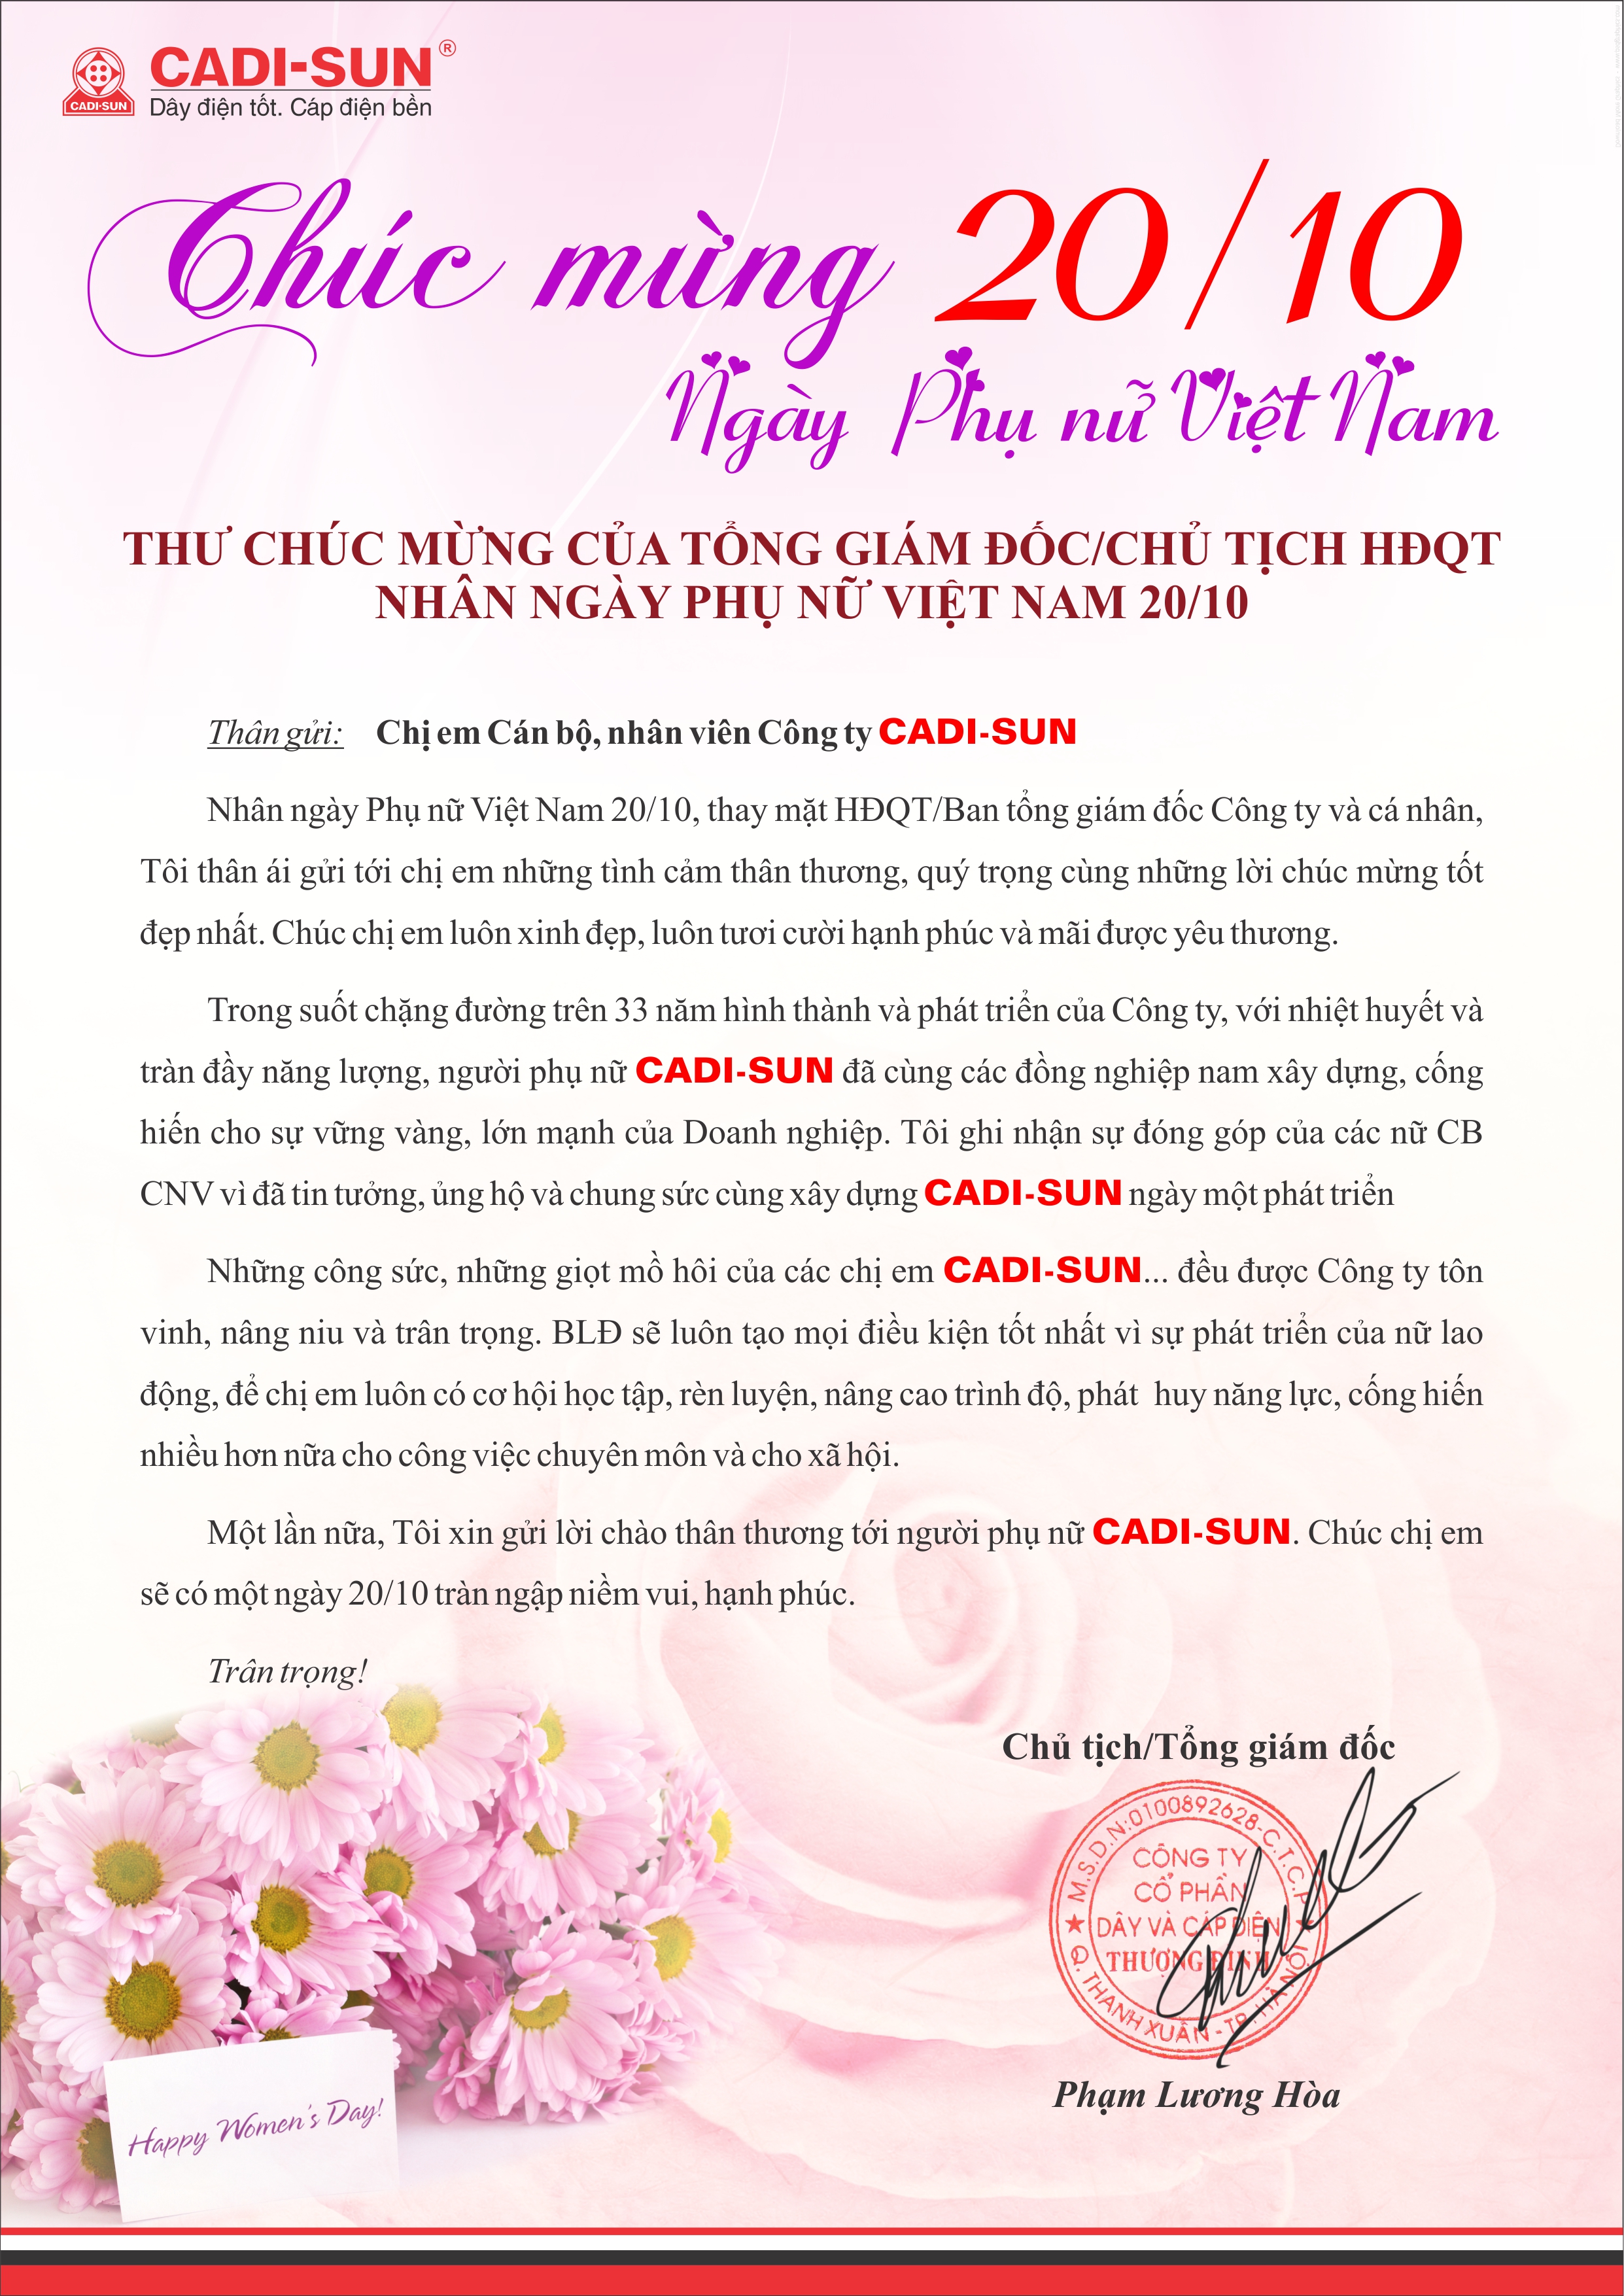 Thư chúc mừng của TGĐ/chủ tịch HĐQT nhân ngày phụ nữ Việt Nam 20-10